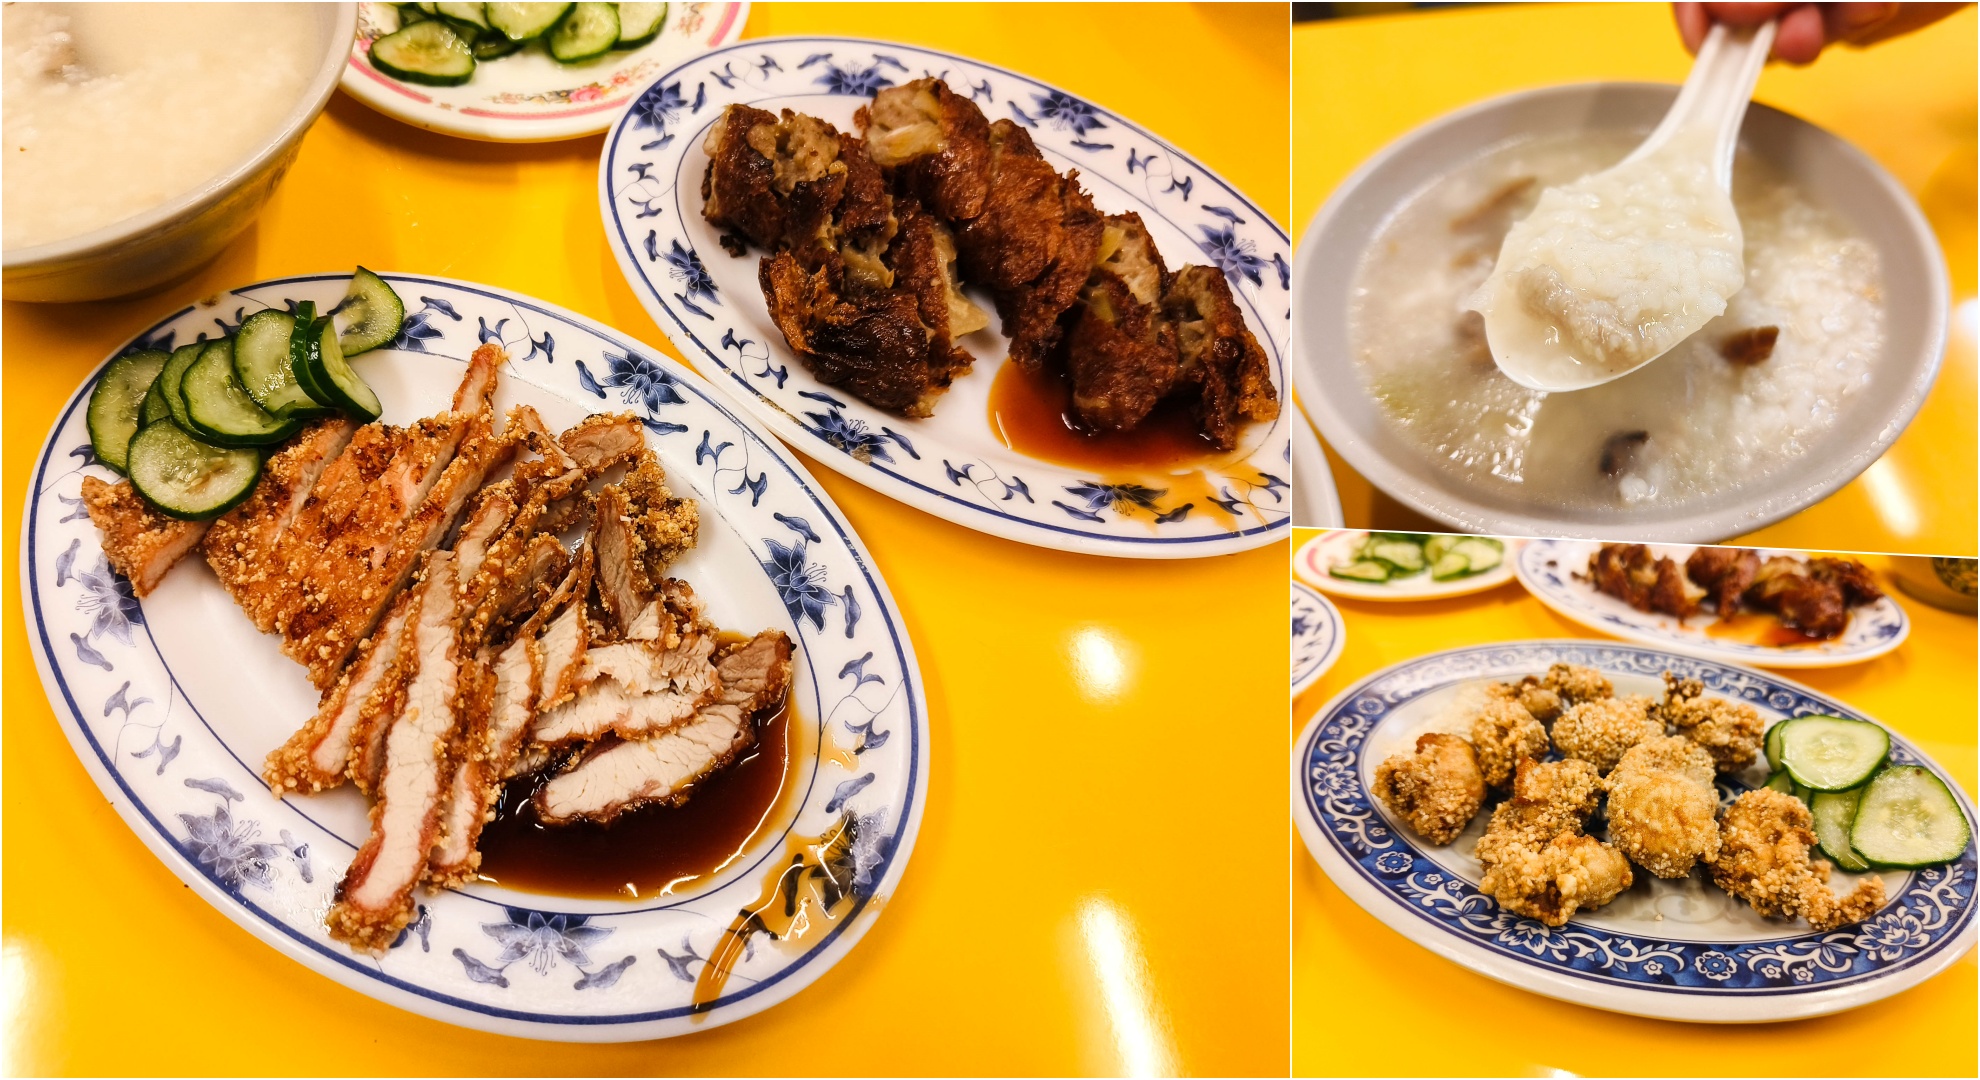 (忠孝復興站美食)叁和院台灣風格飲食餐廳,創意新式台菜凸顯不同之處 @Nancy將的生活筆計本